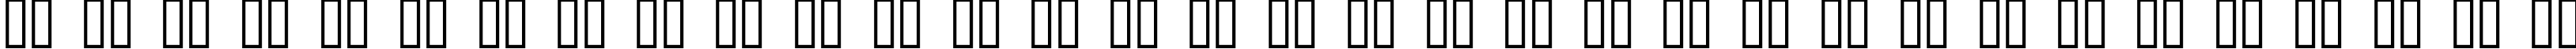 Пример написания русского алфавита шрифтом Font Heads